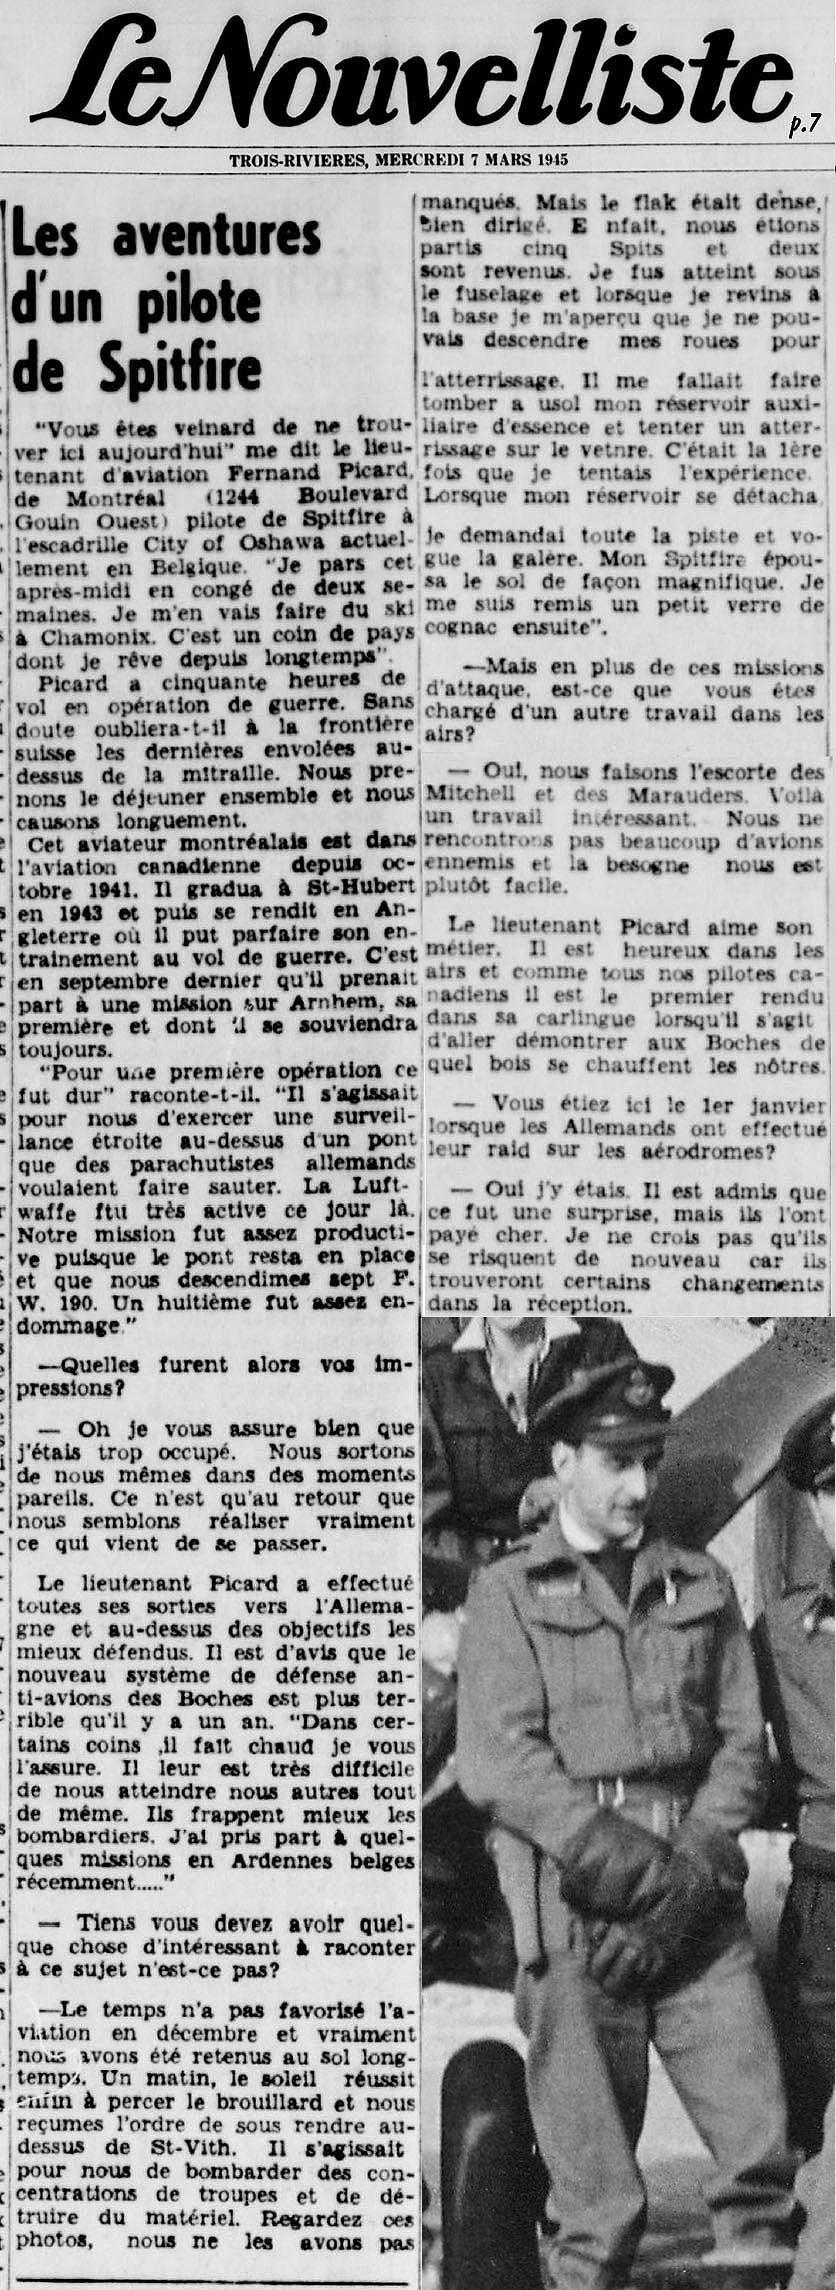 Le Nouvelliste 1945-03-07_07b